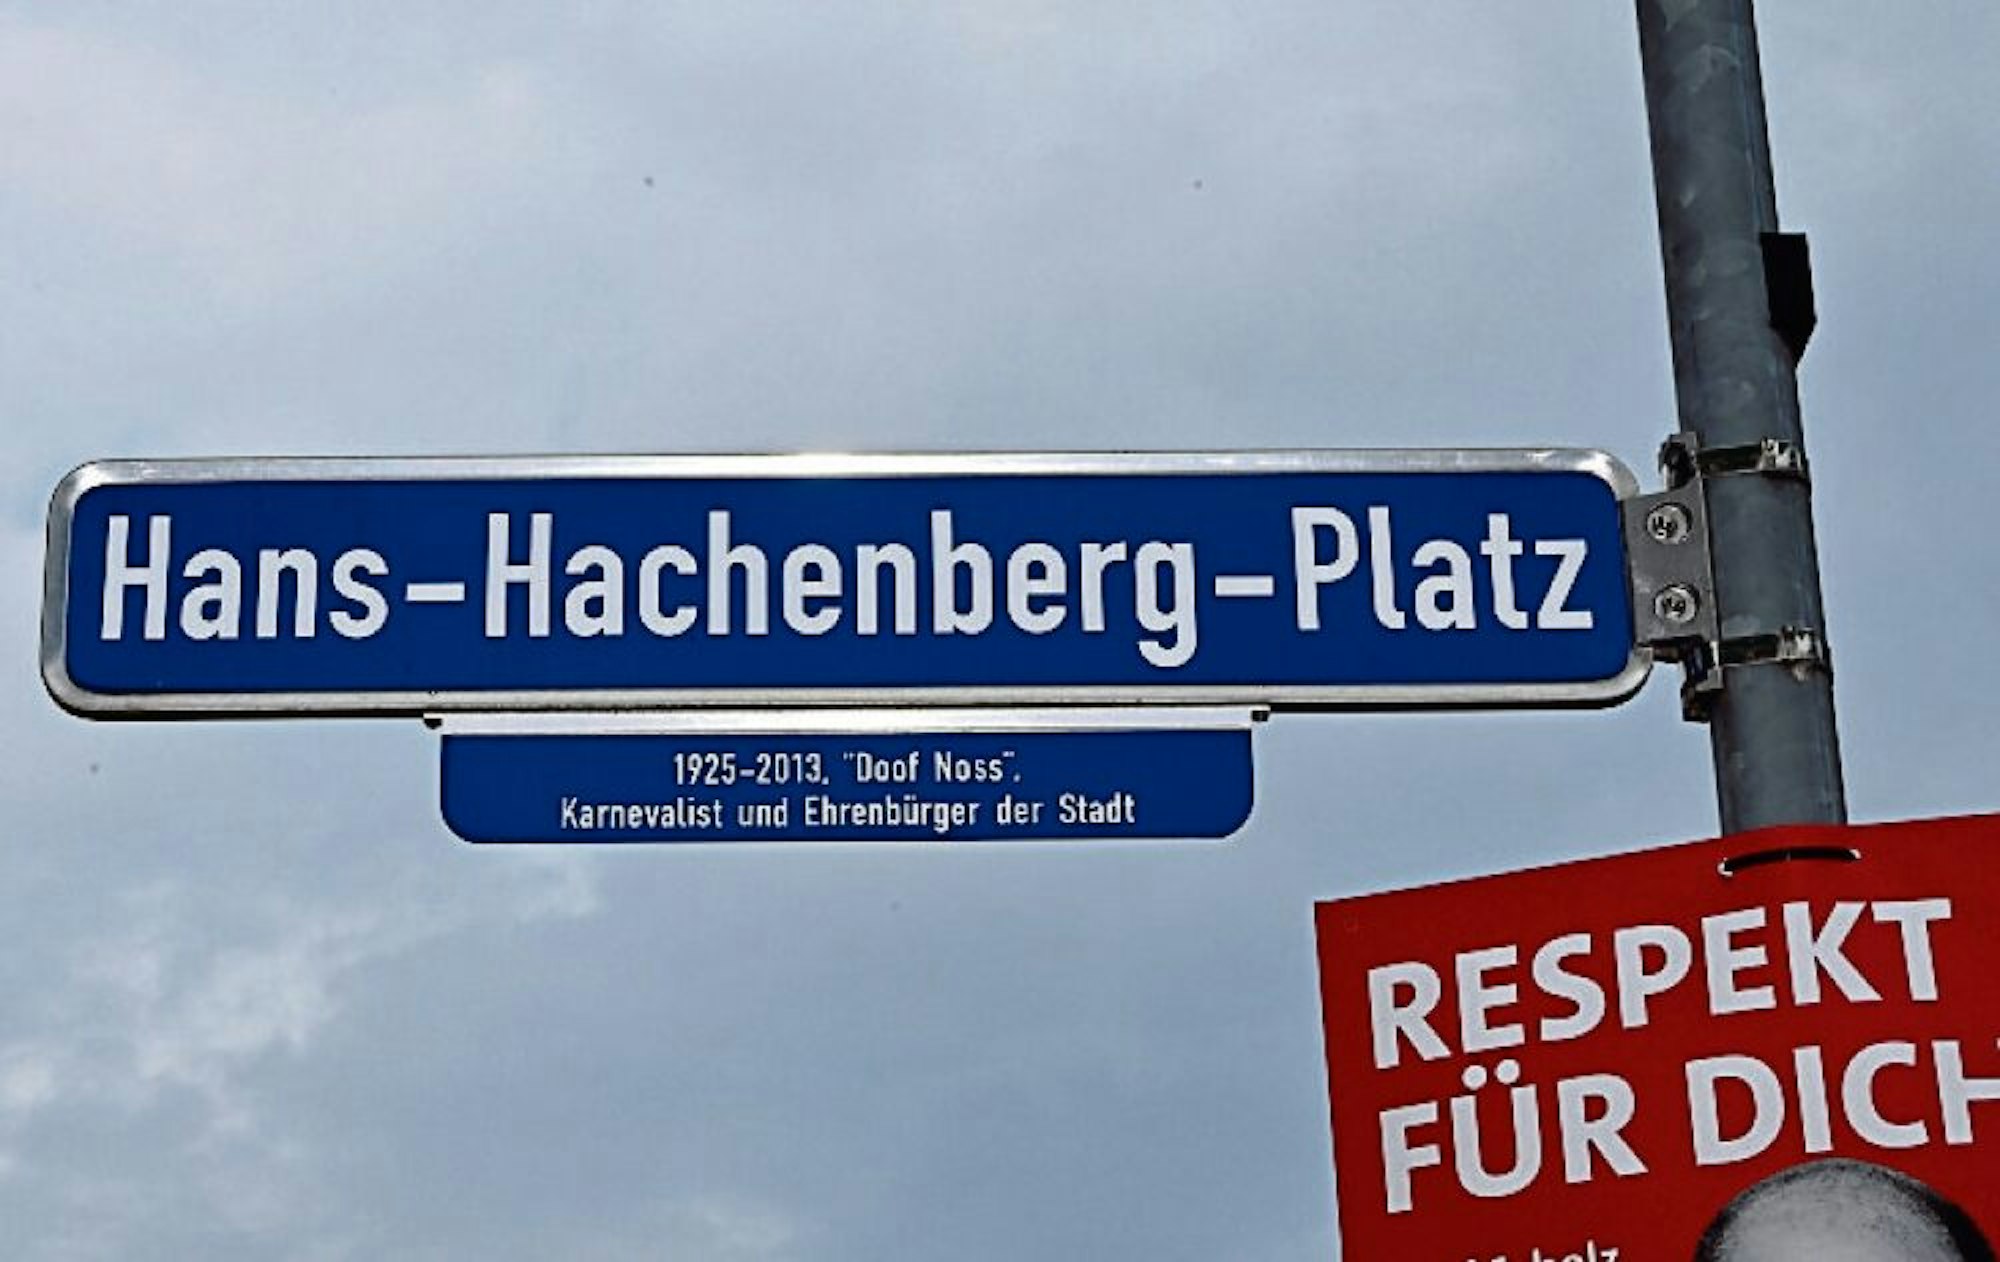 Der Hans-Hachenberg-Platz in Paffrath erinnert an den unvergessenen Humoristen und seine Figur „Doof Noss“.